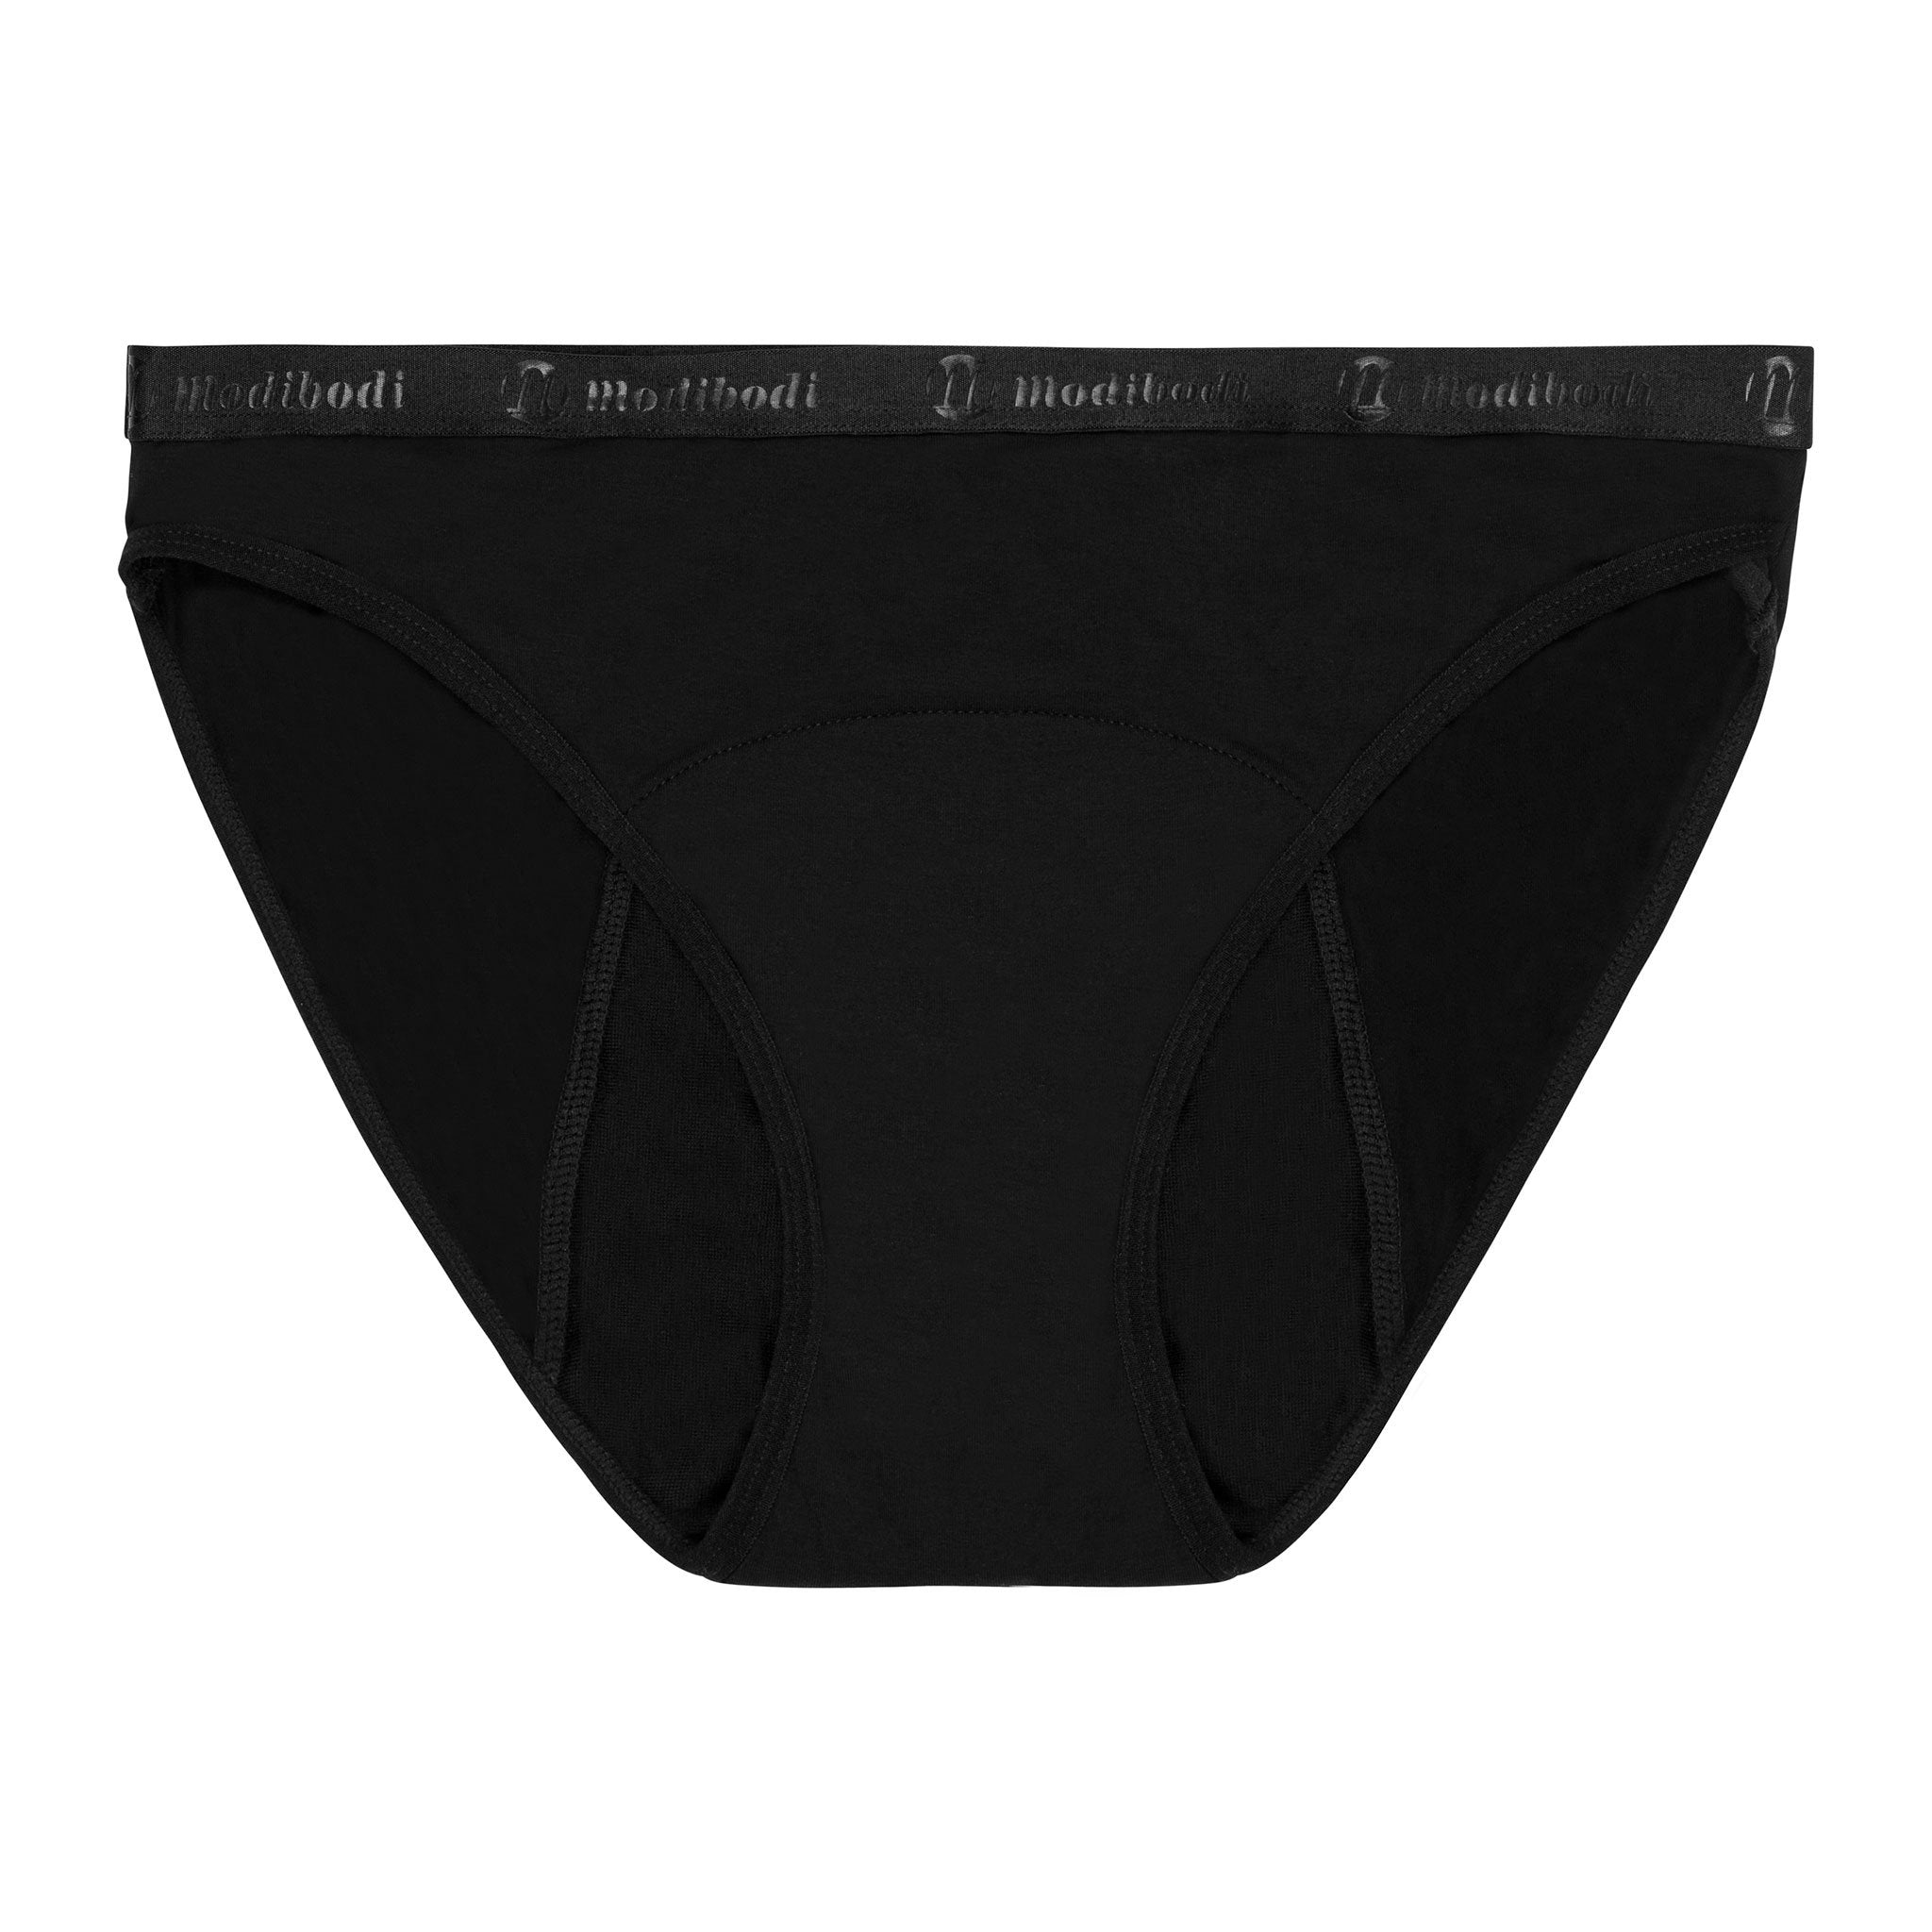 Modibodi Period Pants For Women Bikini Bottoms - Incontinence